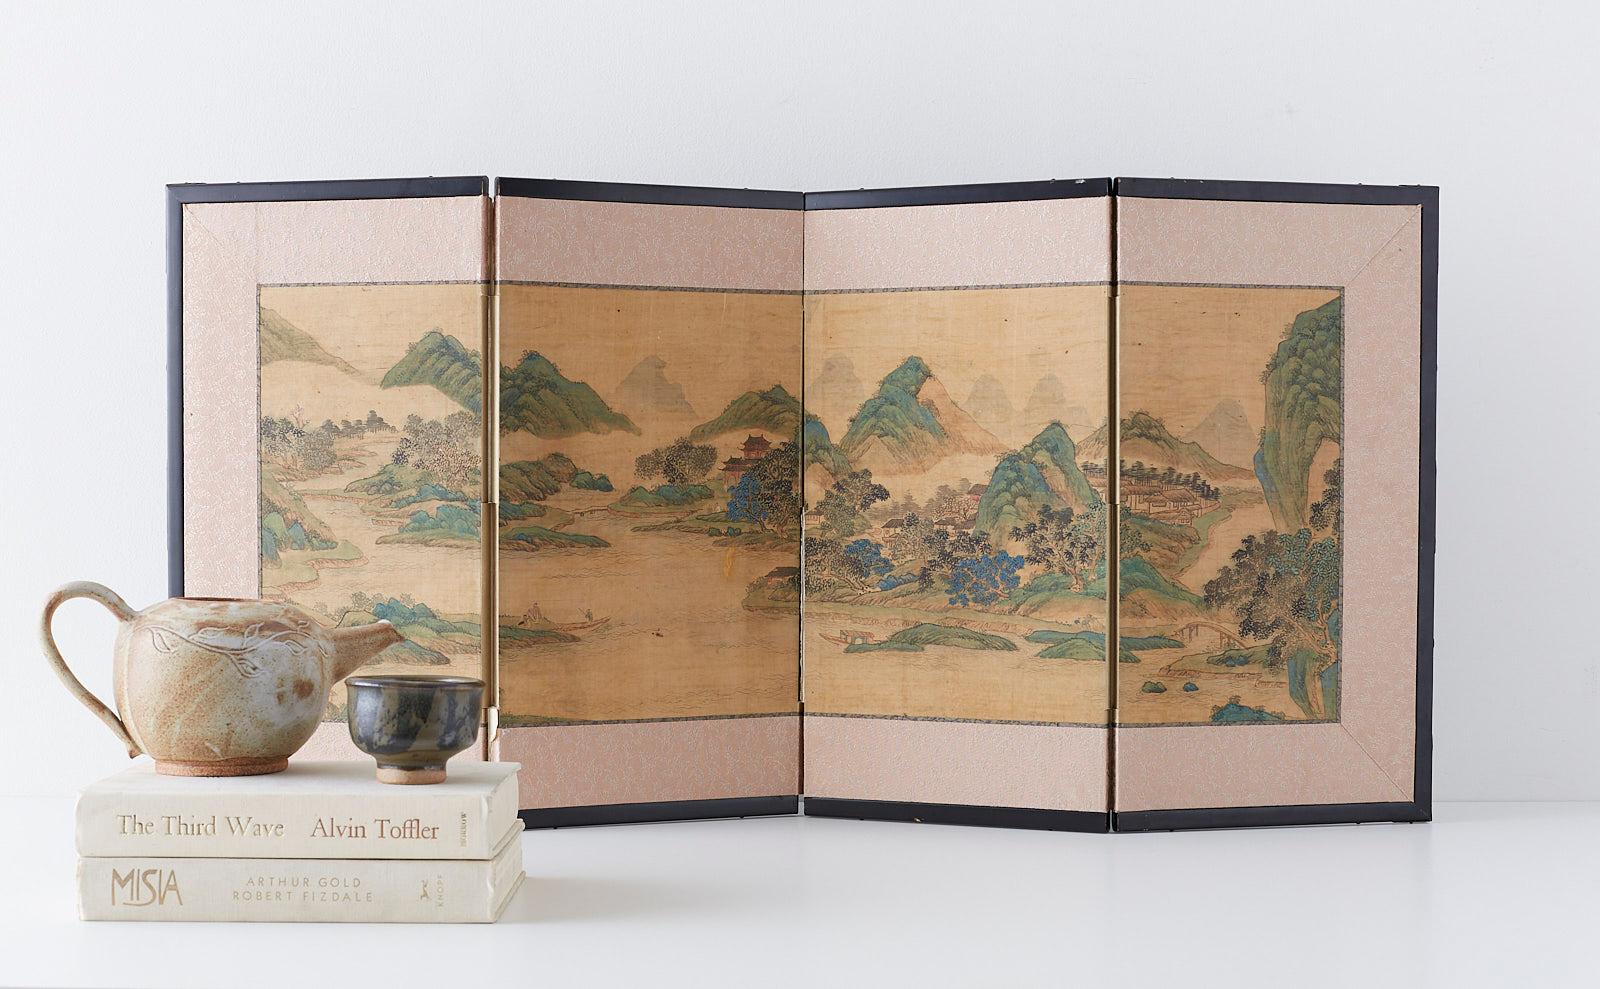 paravent japonais à quatre panneaux, datant du milieu de la période Edo, du XIXe siècle. Représentation d'un paysage chinois bleu et vert magnifiquement peint dans le style de l'école Nanga ou peinture literati. Encre et pigments de couleur sur soie